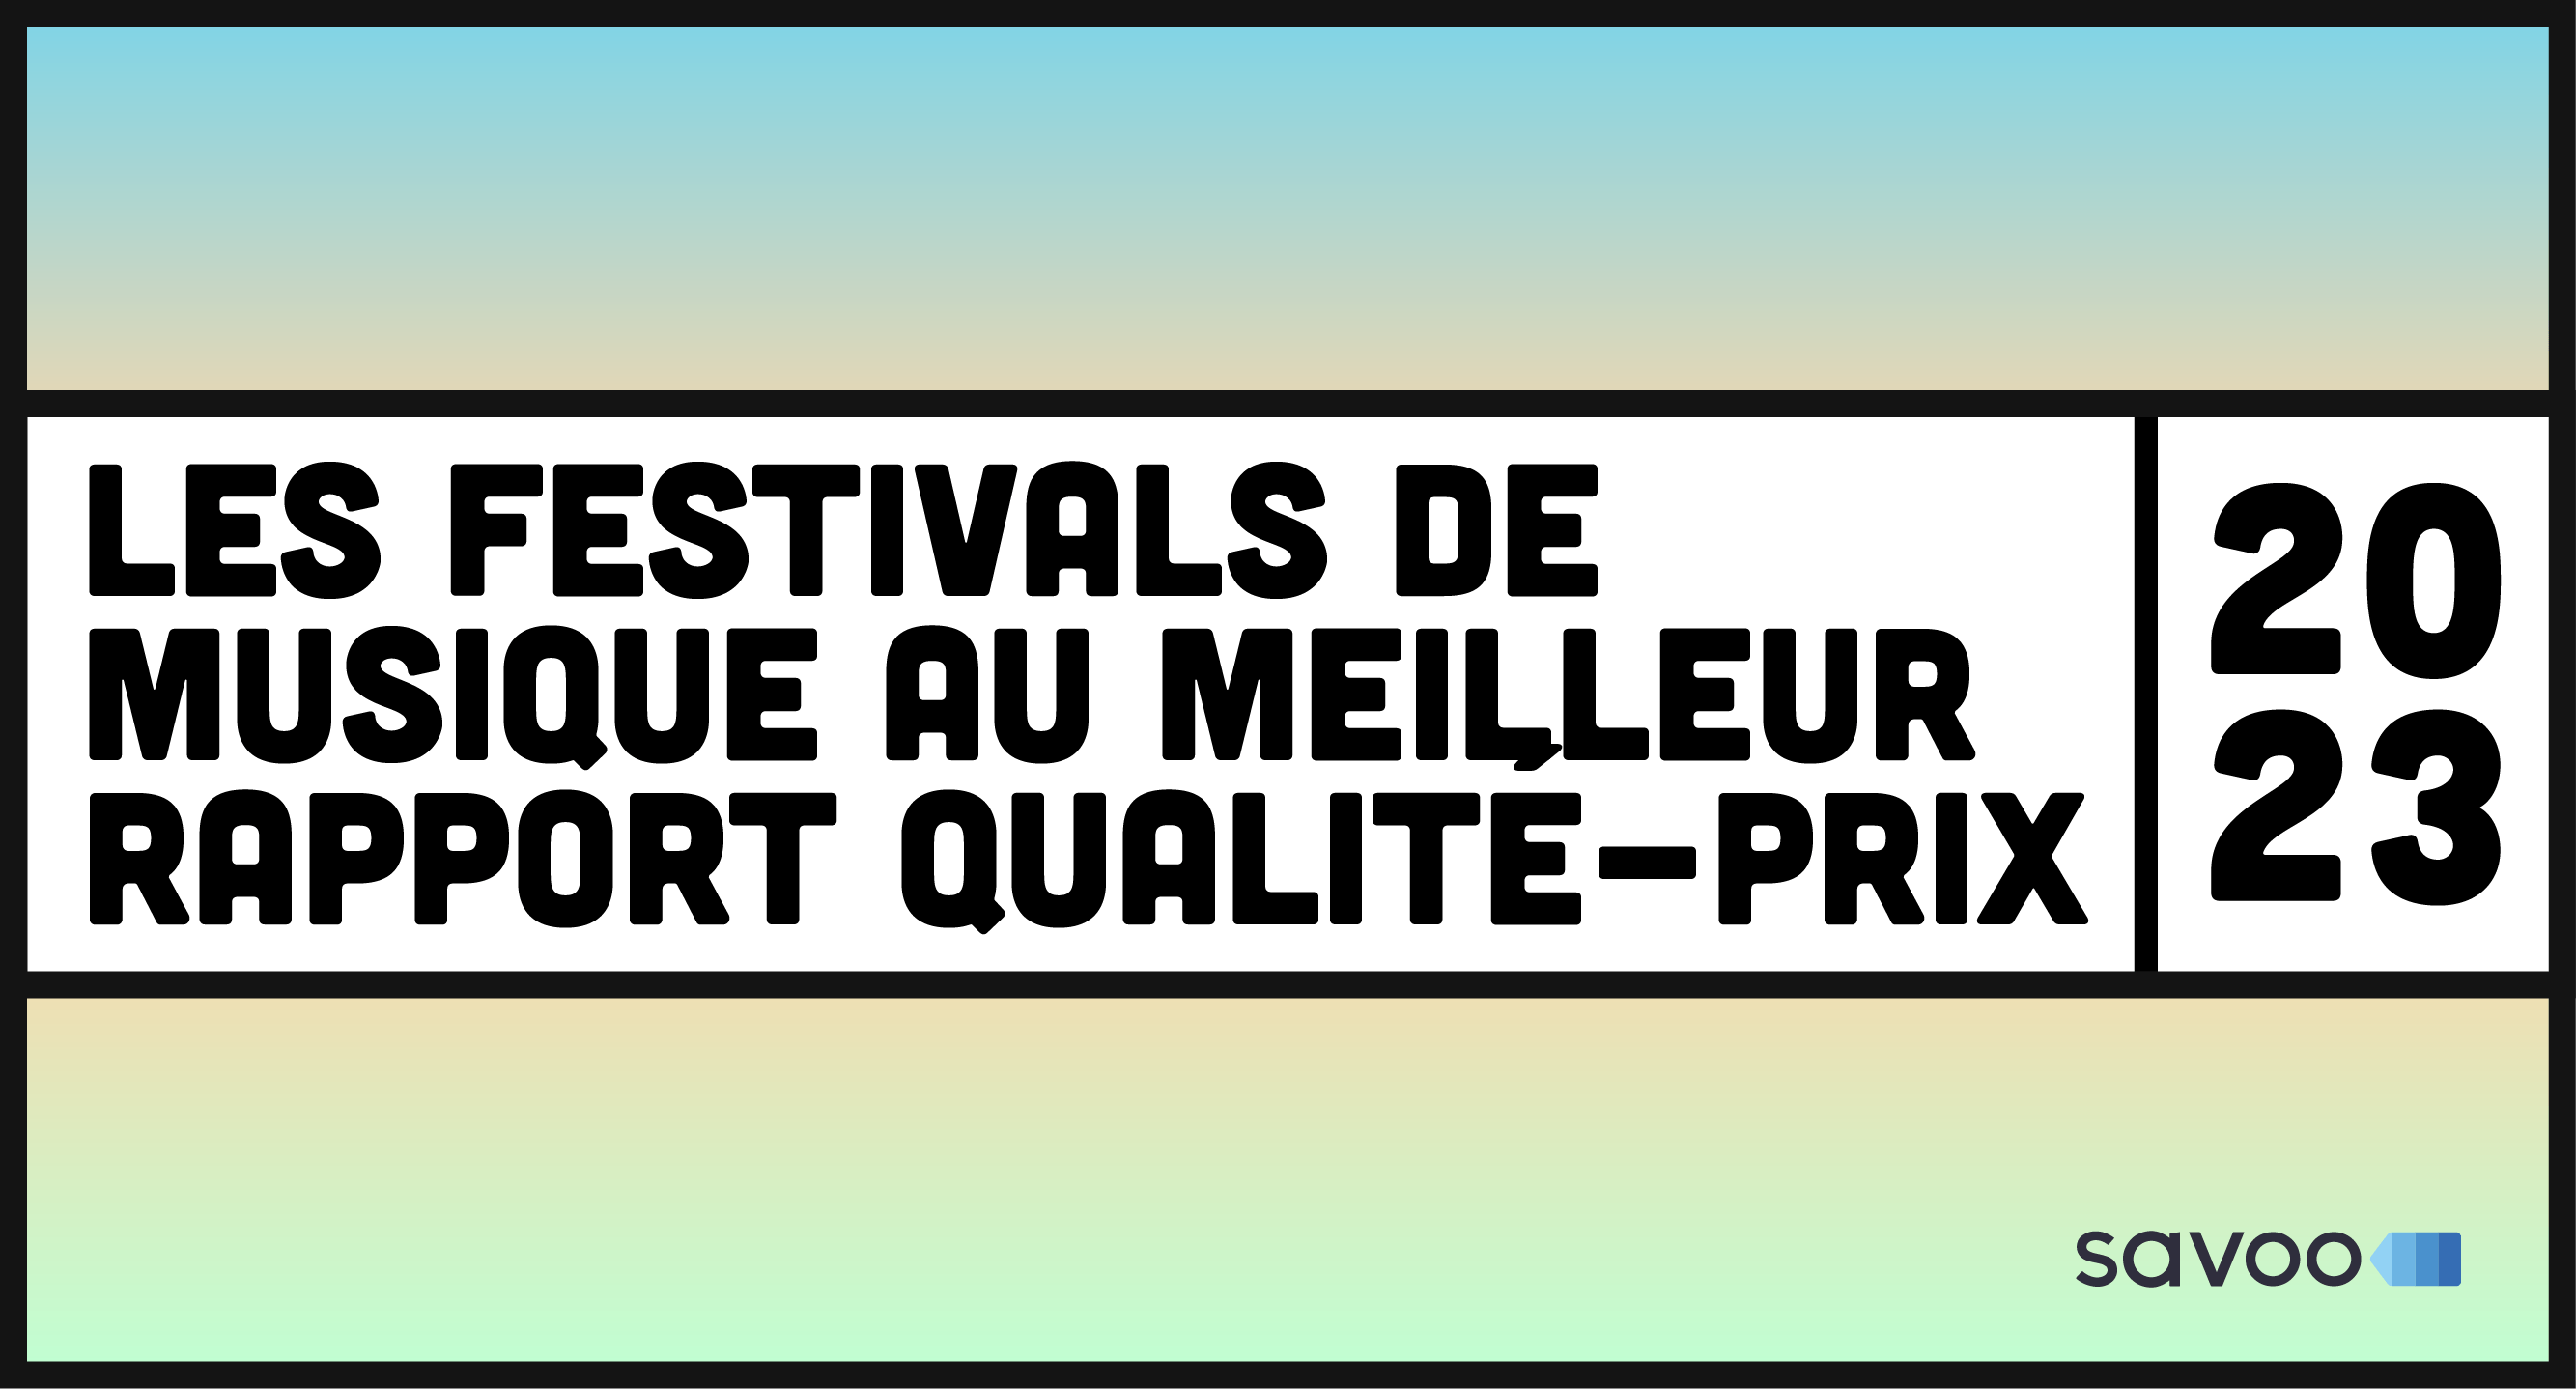 Les festivals de musique au meilleur rapport qualité-prix